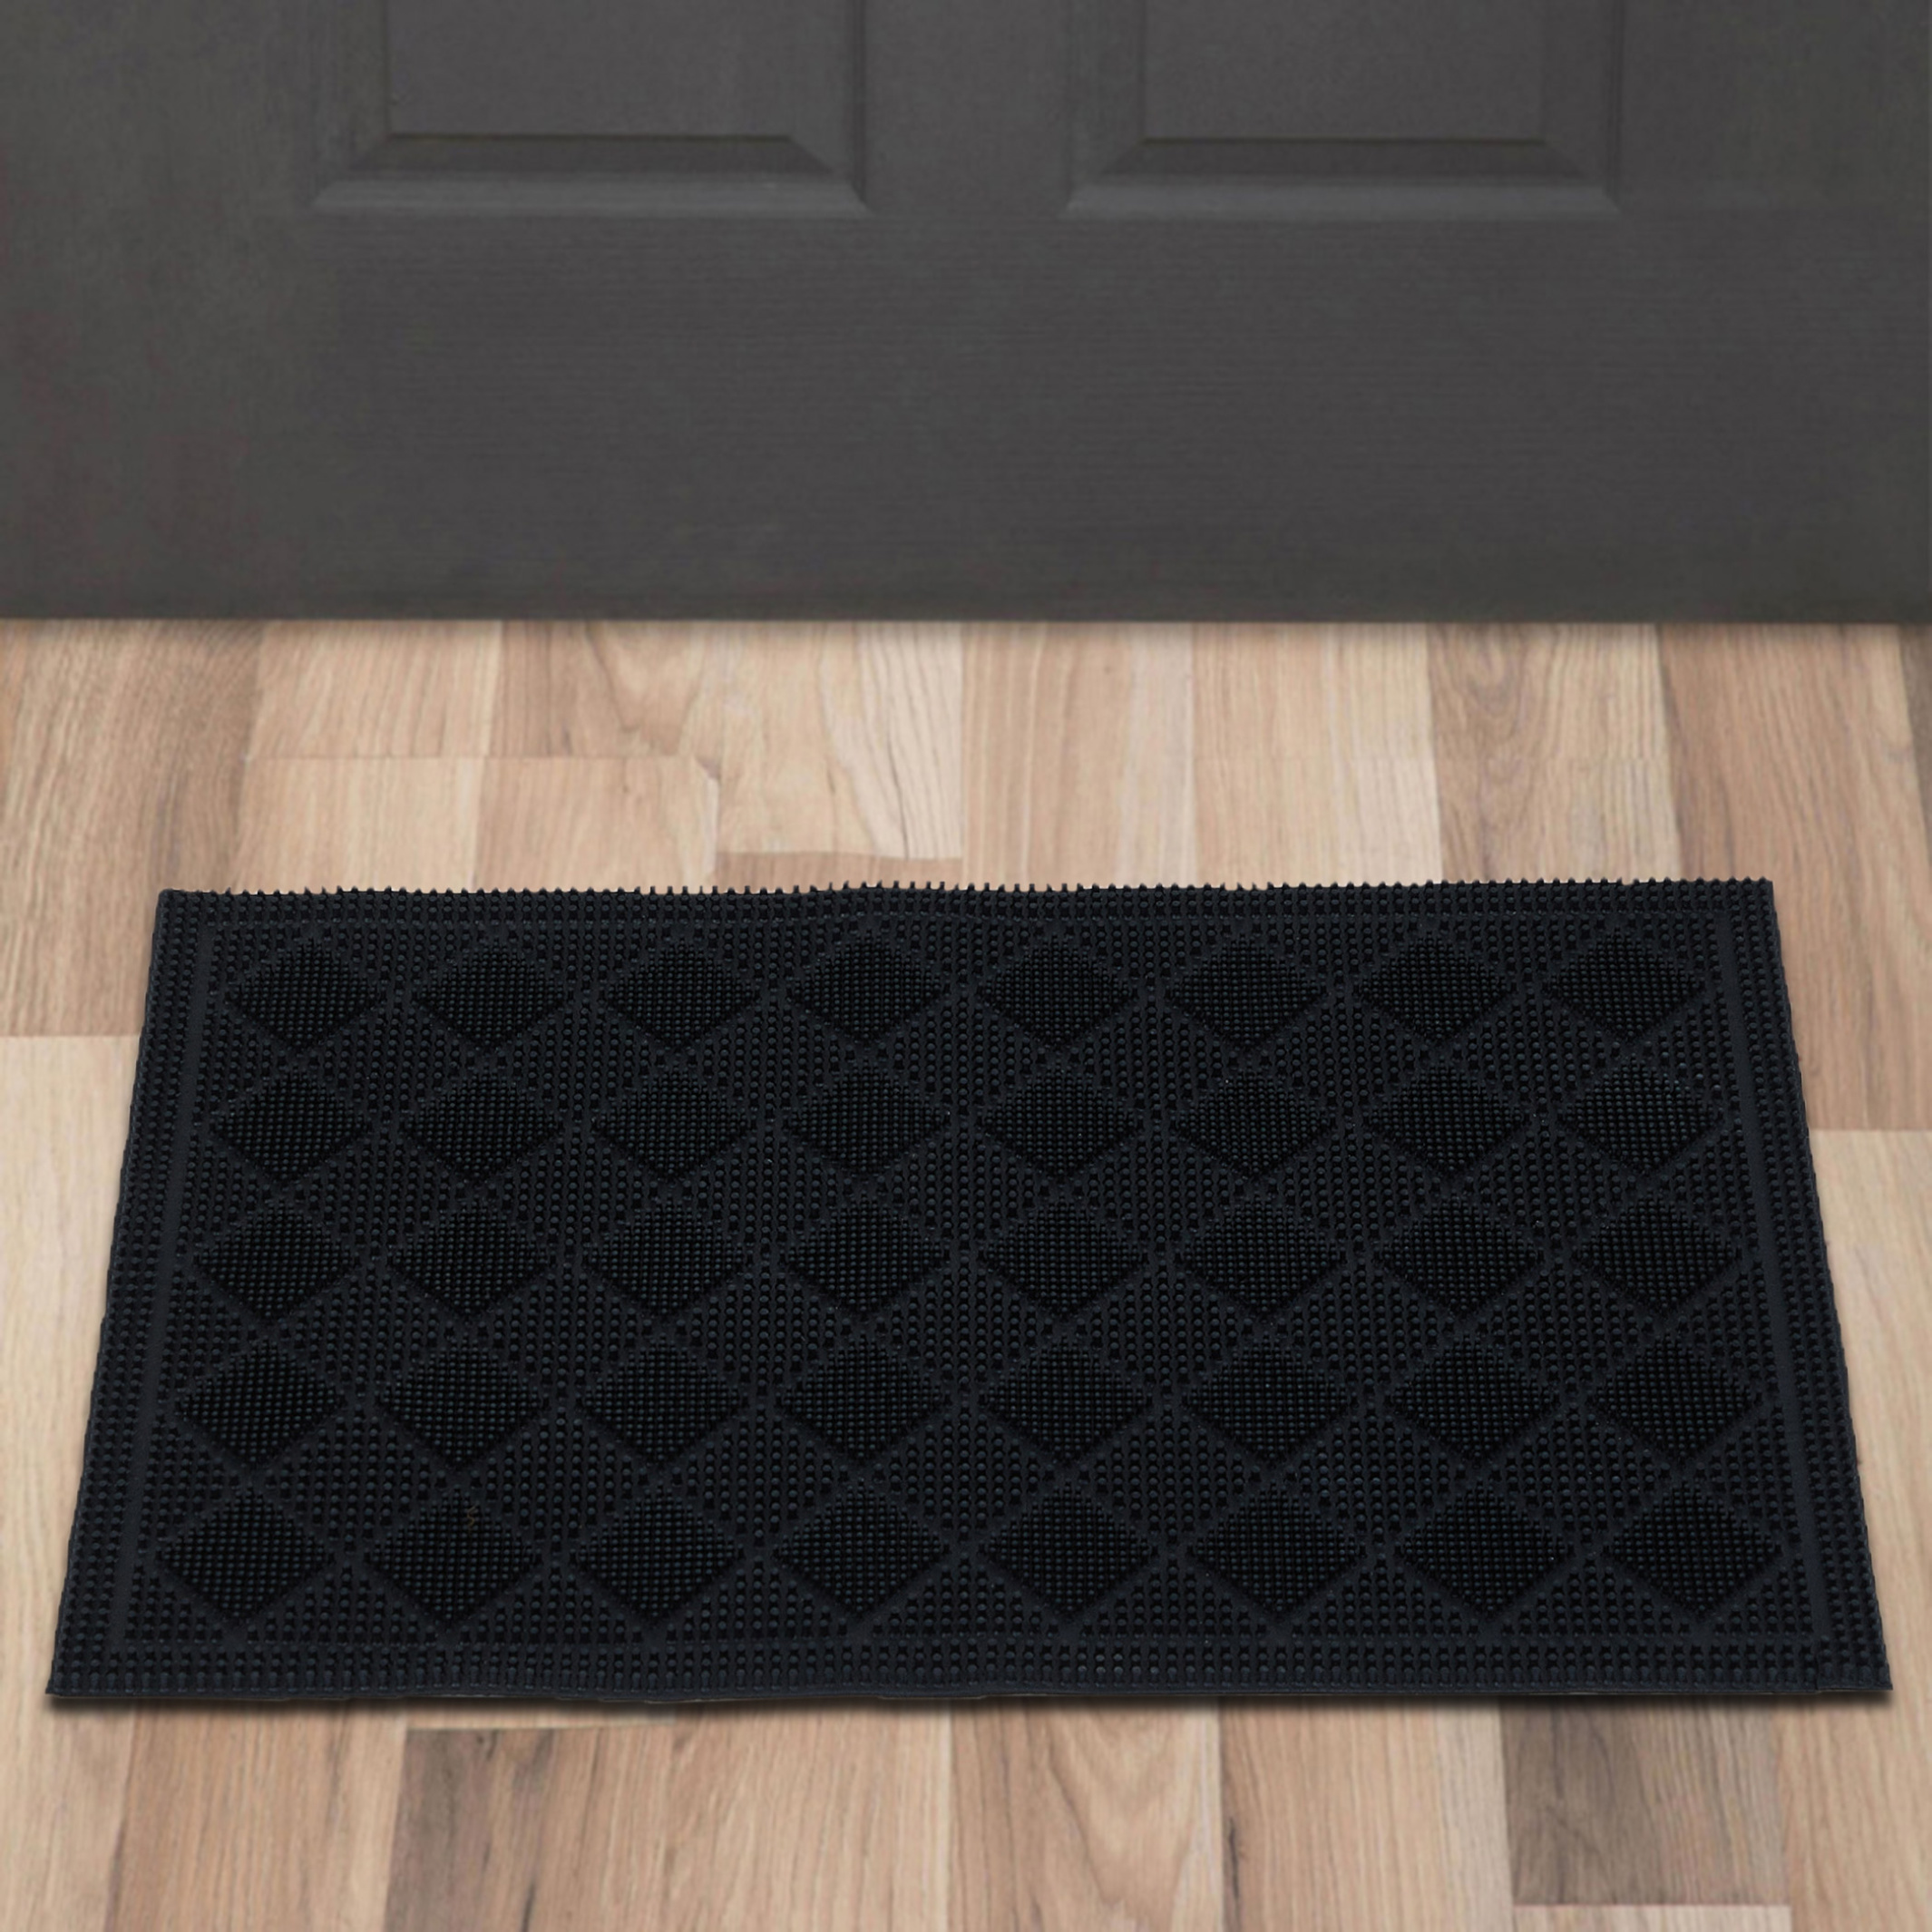 Radiance Rubber Doormat - 60x40cm